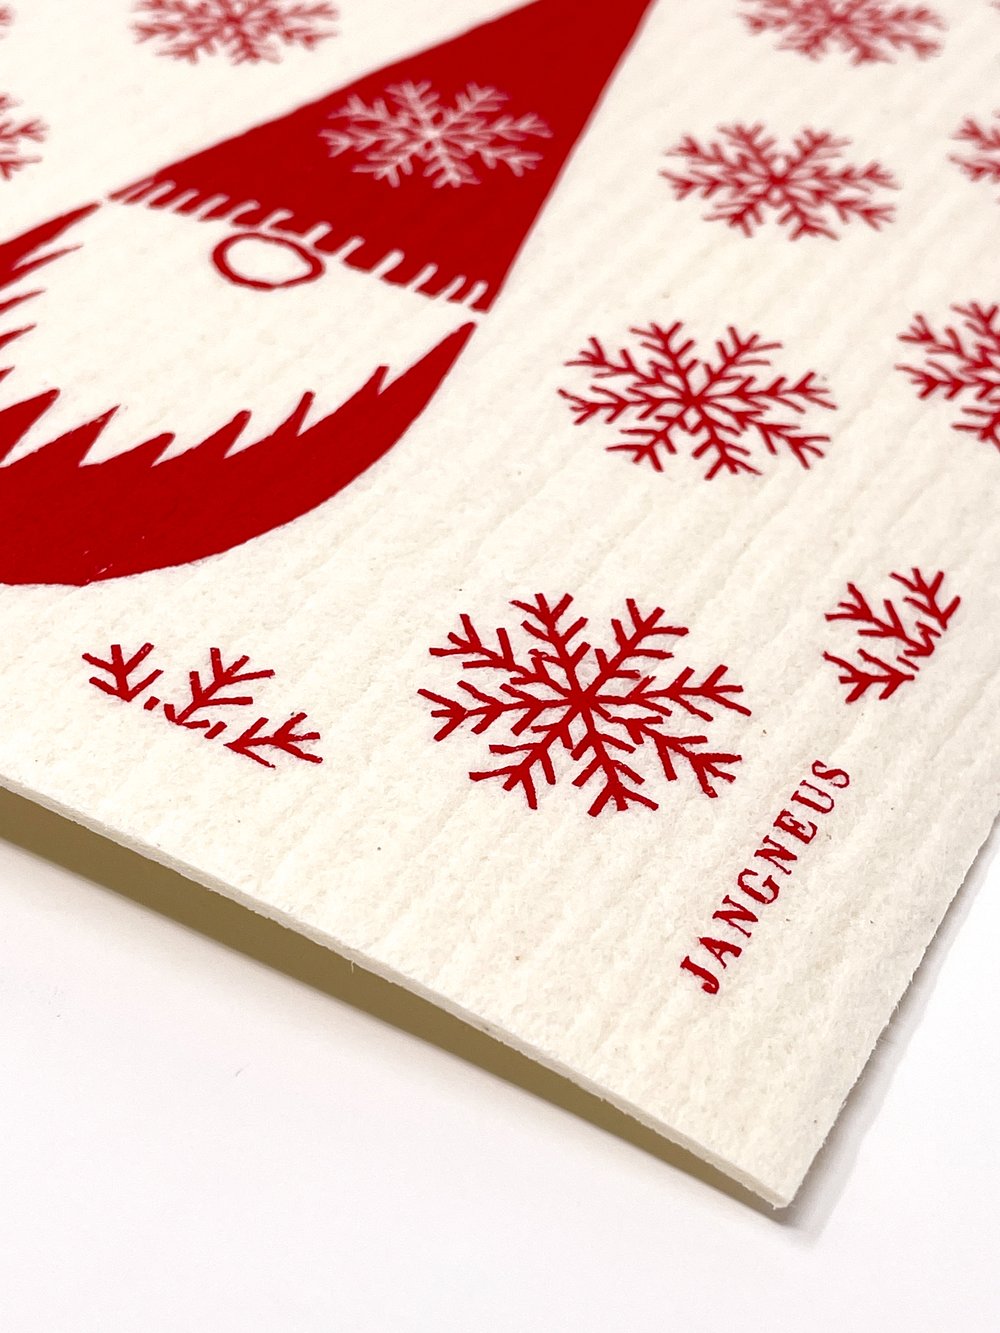 Swedish Kitchen Towels Swedish Fabric Dish Towel Tea Towel Kitchen Decor  Christmas Gift Scandi Kitchen Towel Scandinavian Dala Horse Towel 